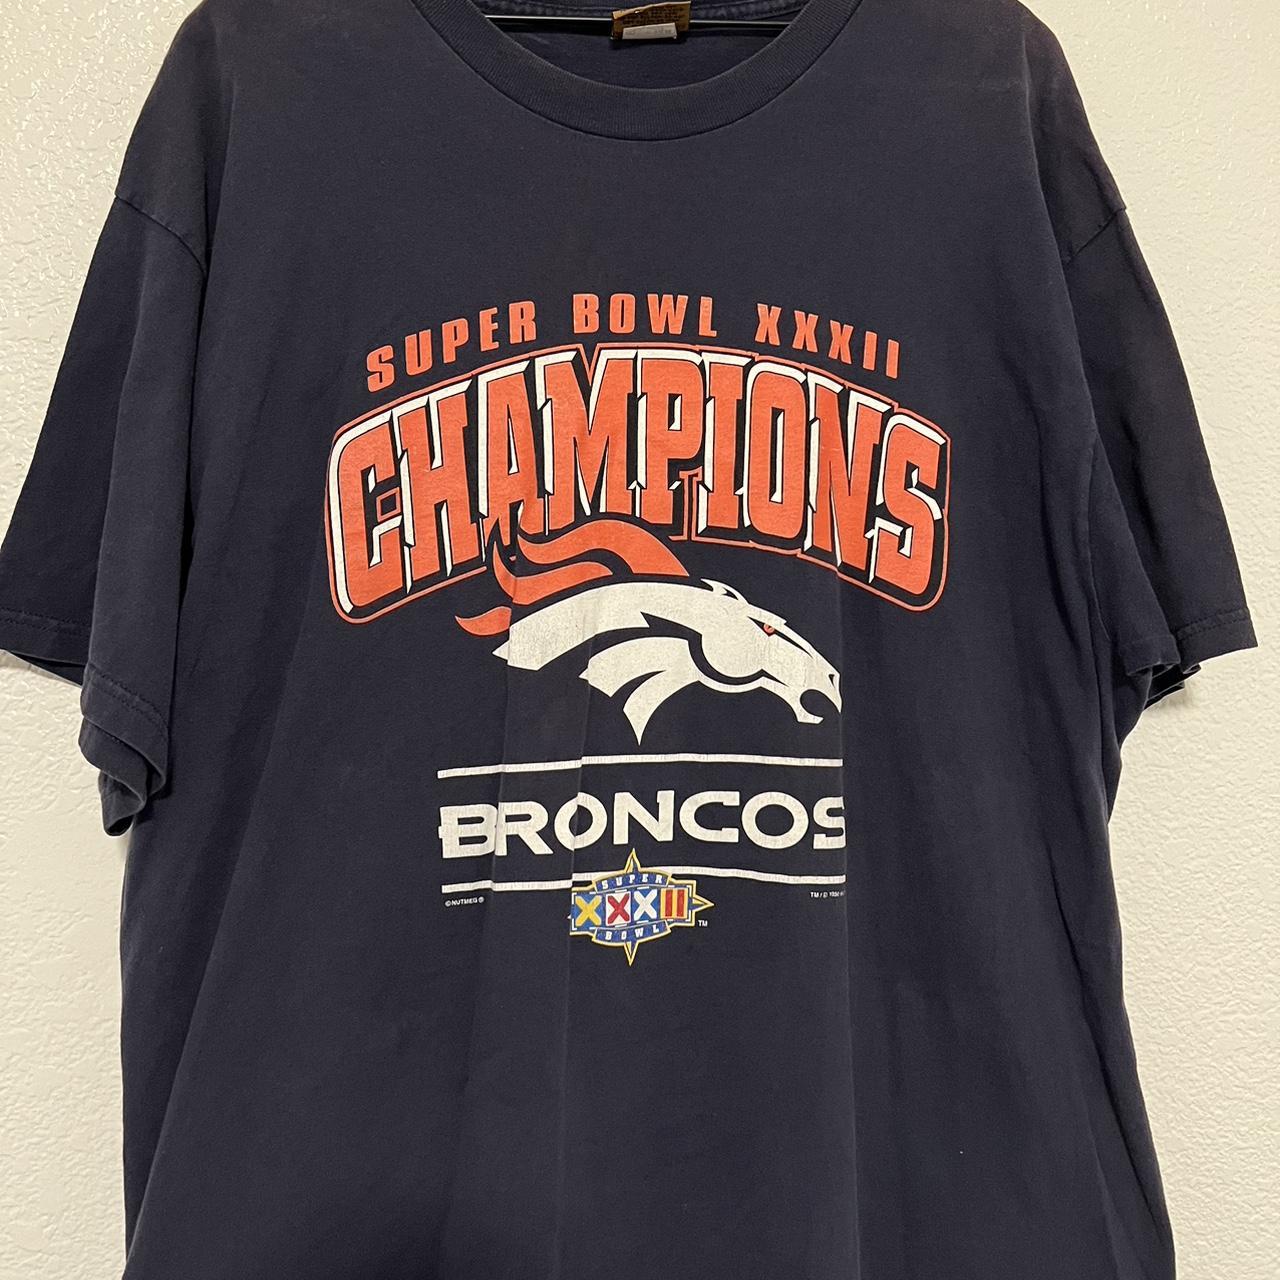 Vintage 1998 NFL Superbowl 32 Denver Broncos Jersey T-shirt Made in USA